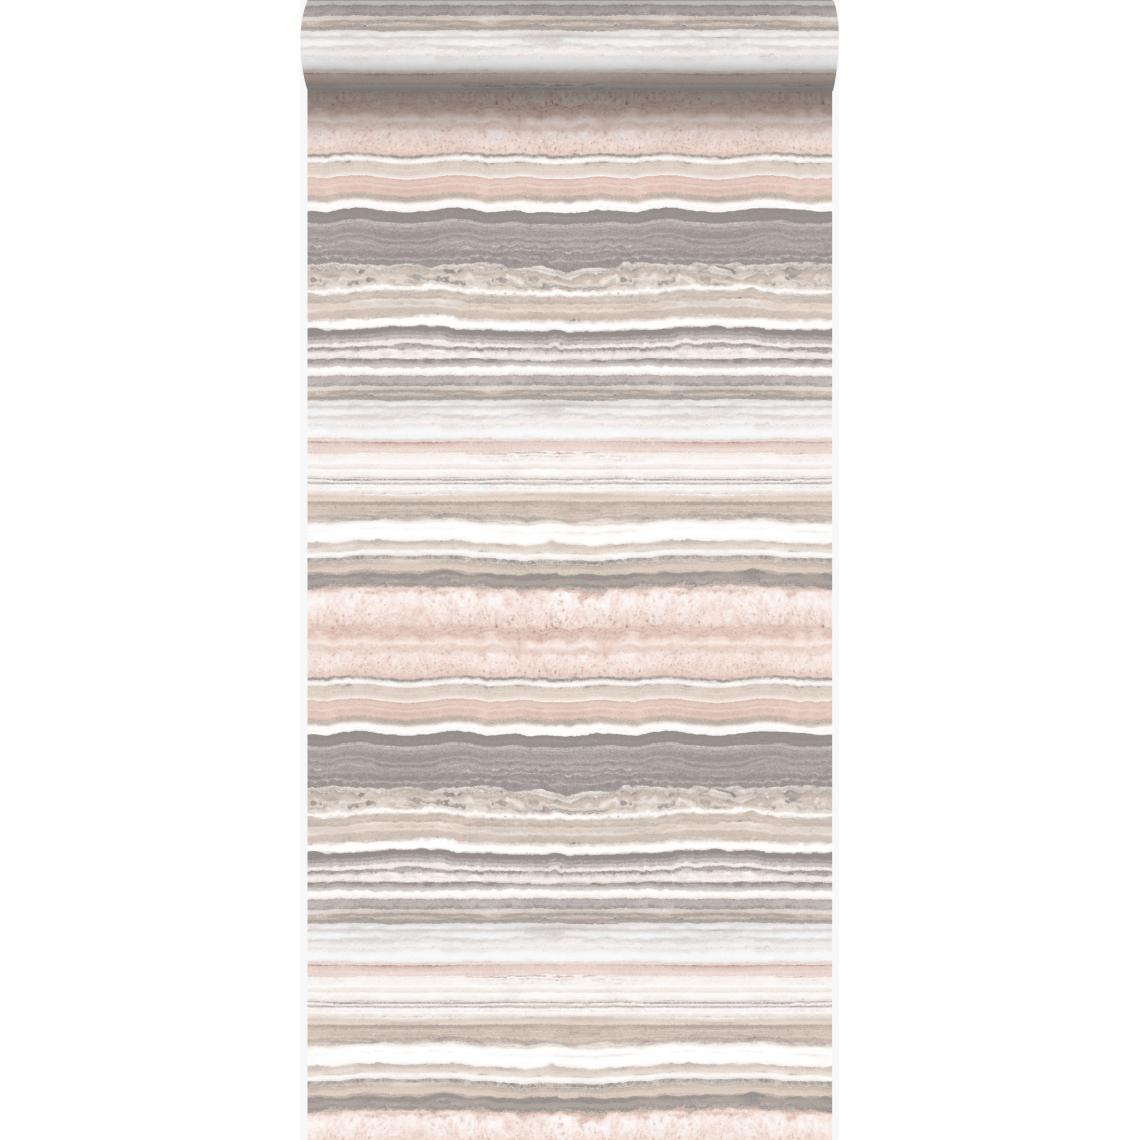 Origin - Origin papier peint pierre de marbre en couches rose pêche et beige - 337236 - 53 cm x 10.05 m - Papier peint